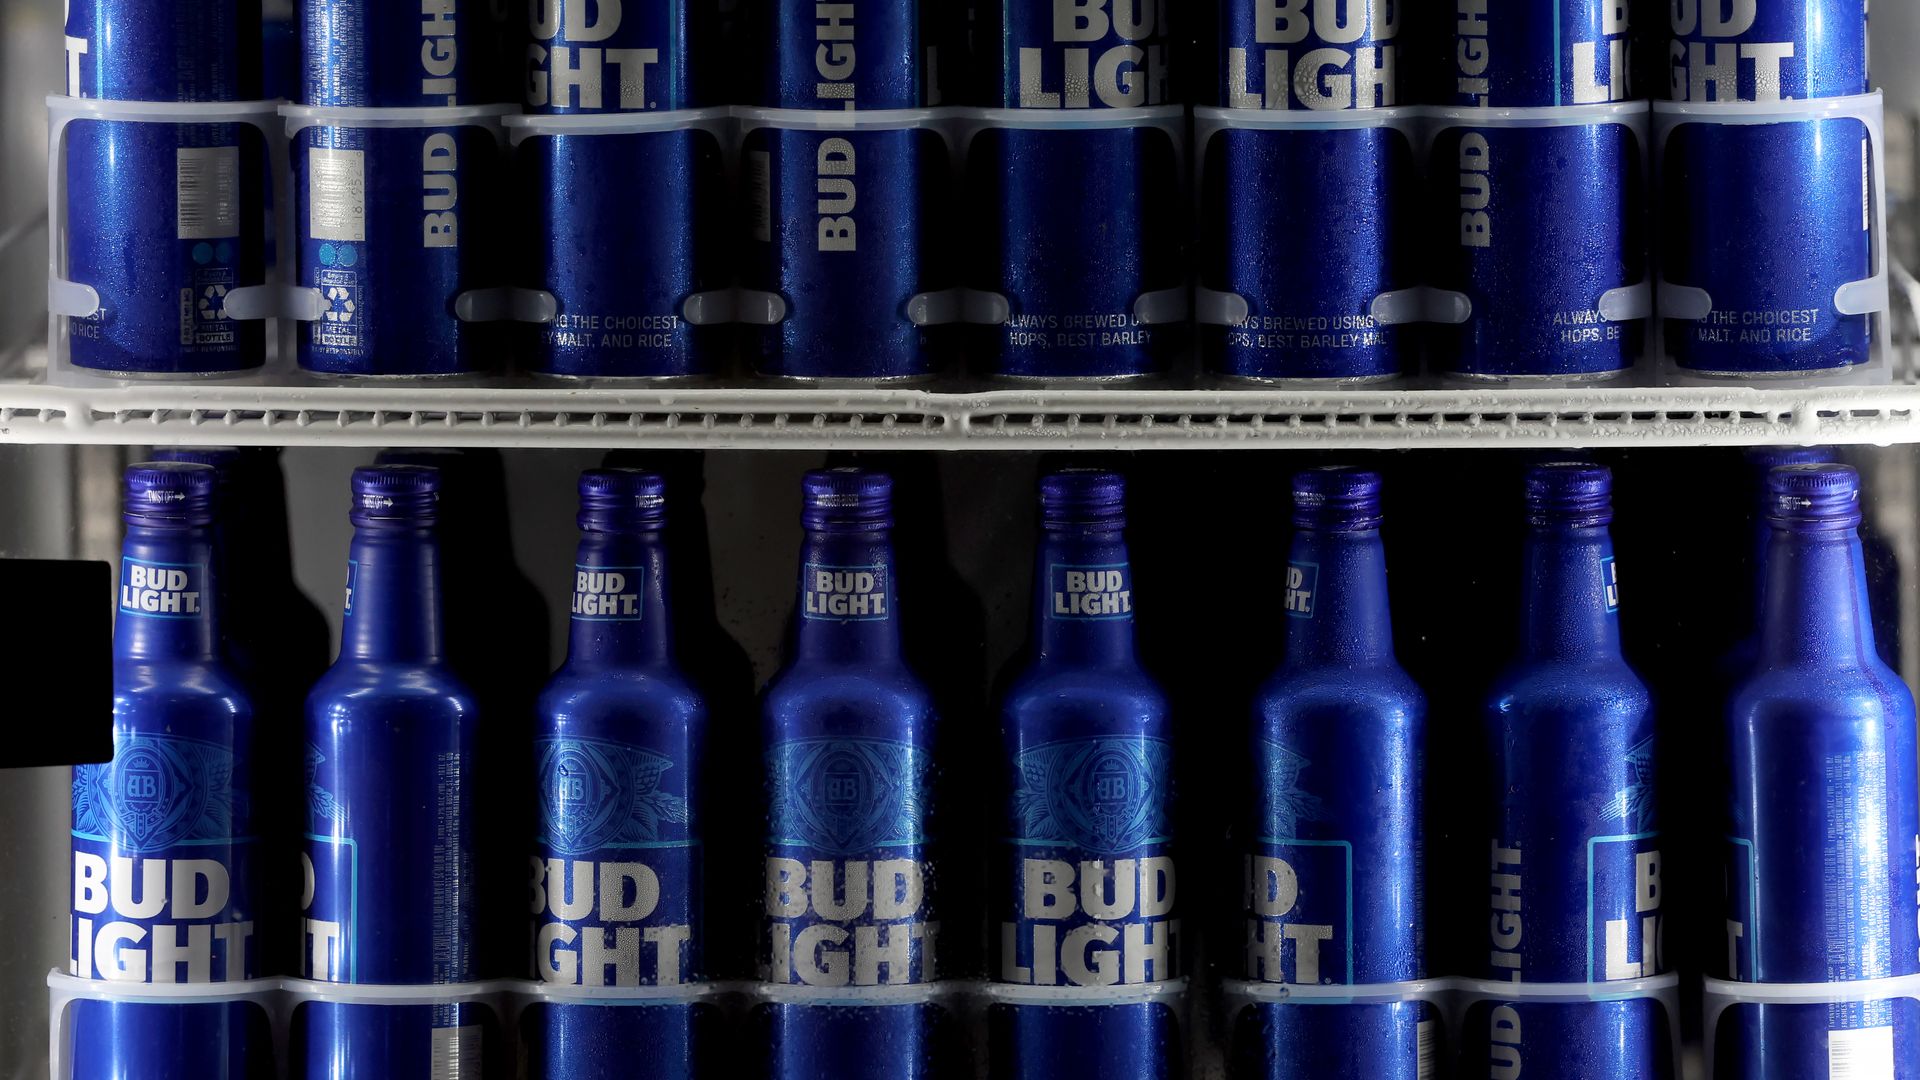 Bud light beers